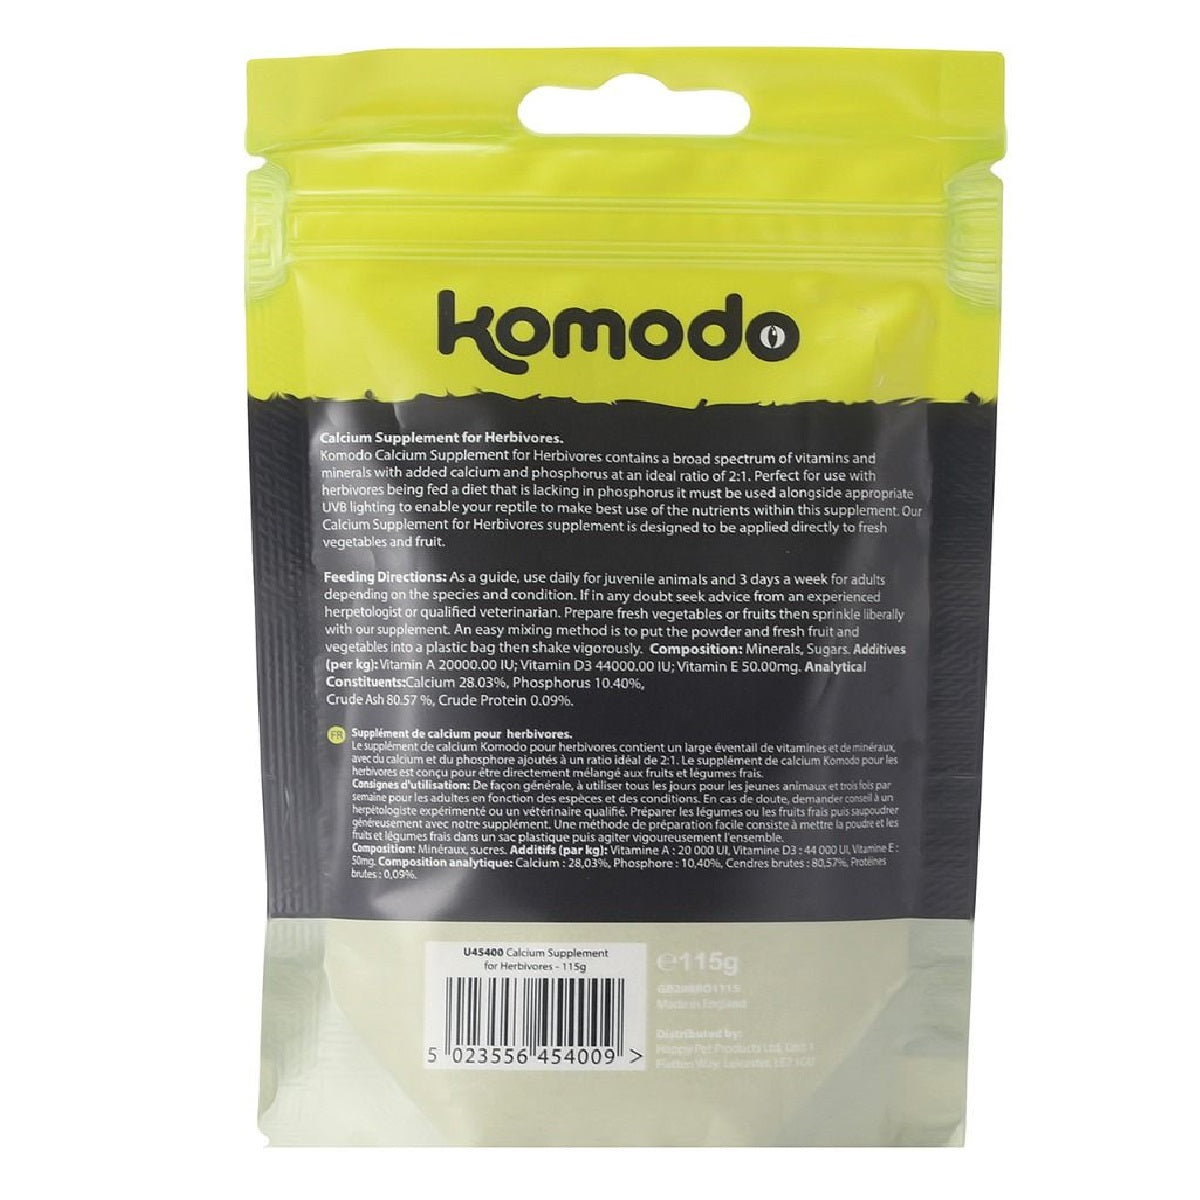 Komodo - Calcium Supplement for Herbivores (115g)